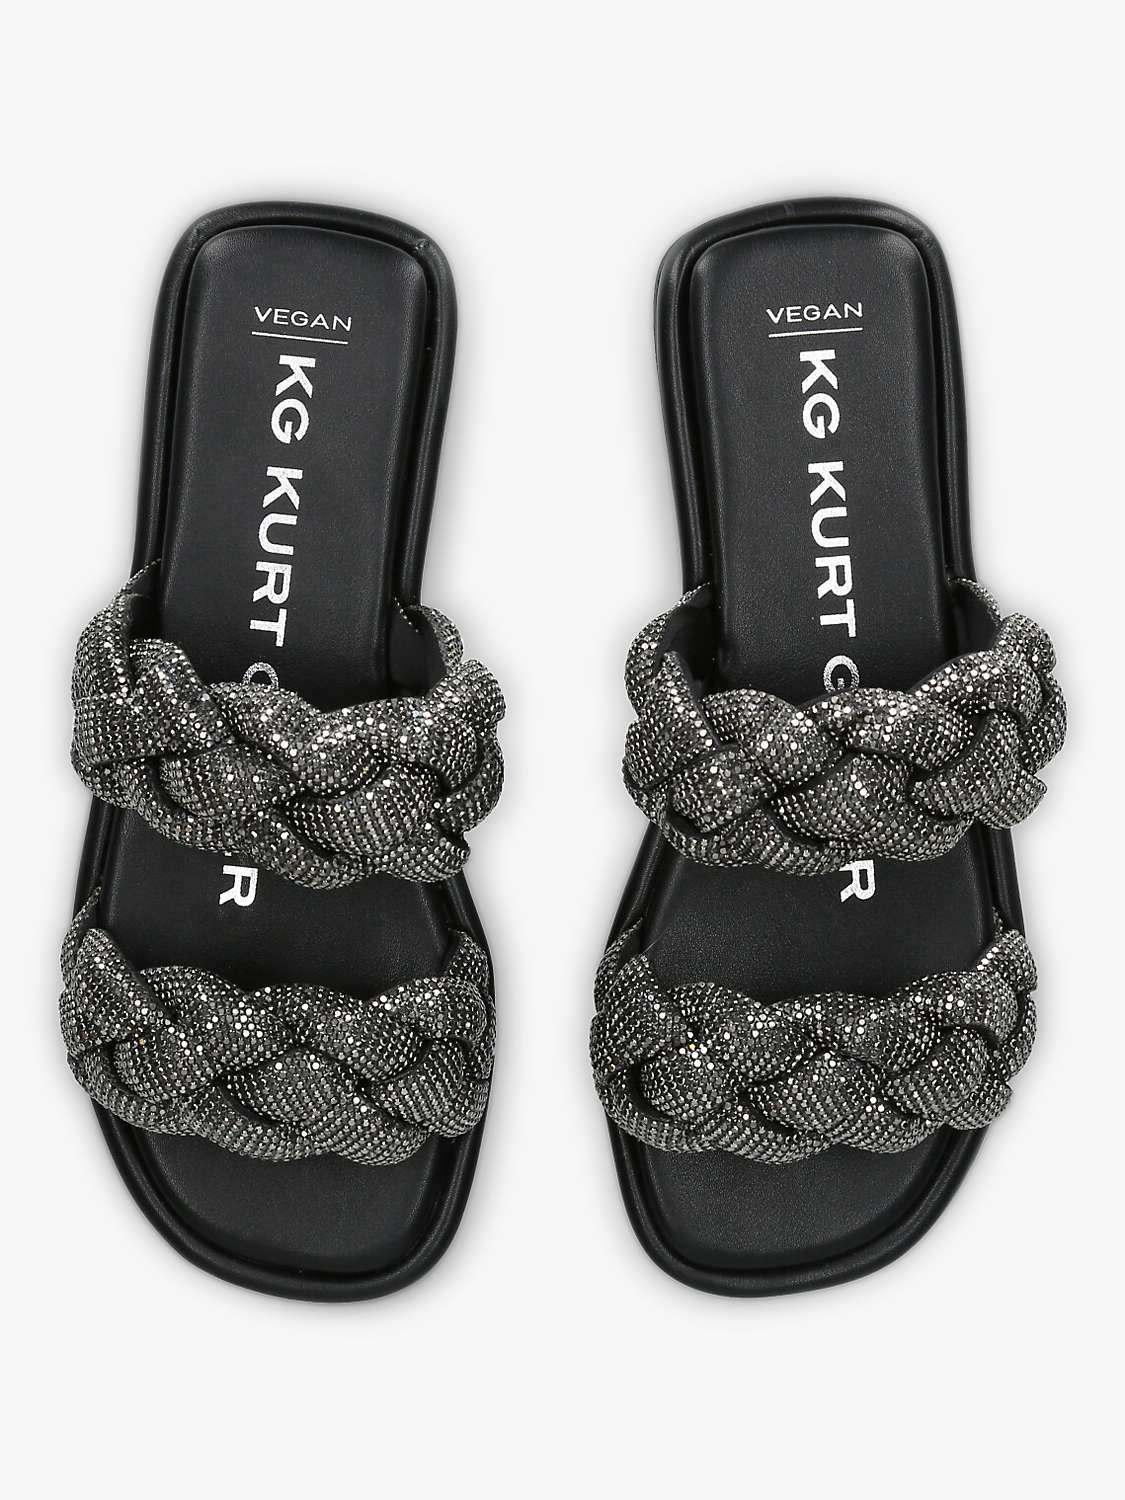 Buy KG Kurt Geiger Rogan Embellished Braided Strap Sandals Online at johnlewis.com